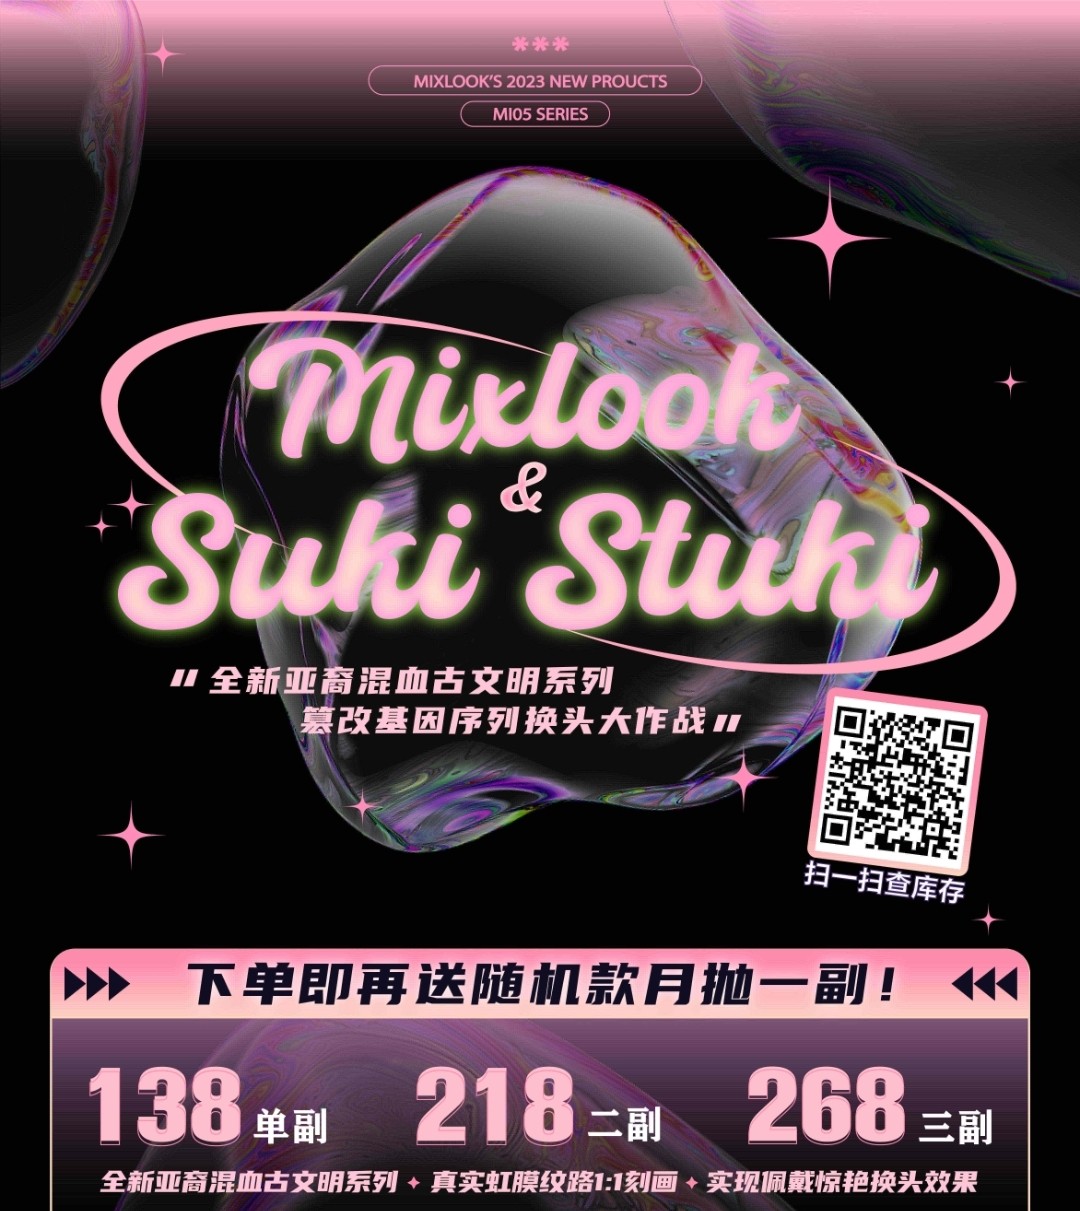 【上新】MIXLOOK·SukiStuki 2023新品登陆⚡️@古文明系列 神秘古典气质美人